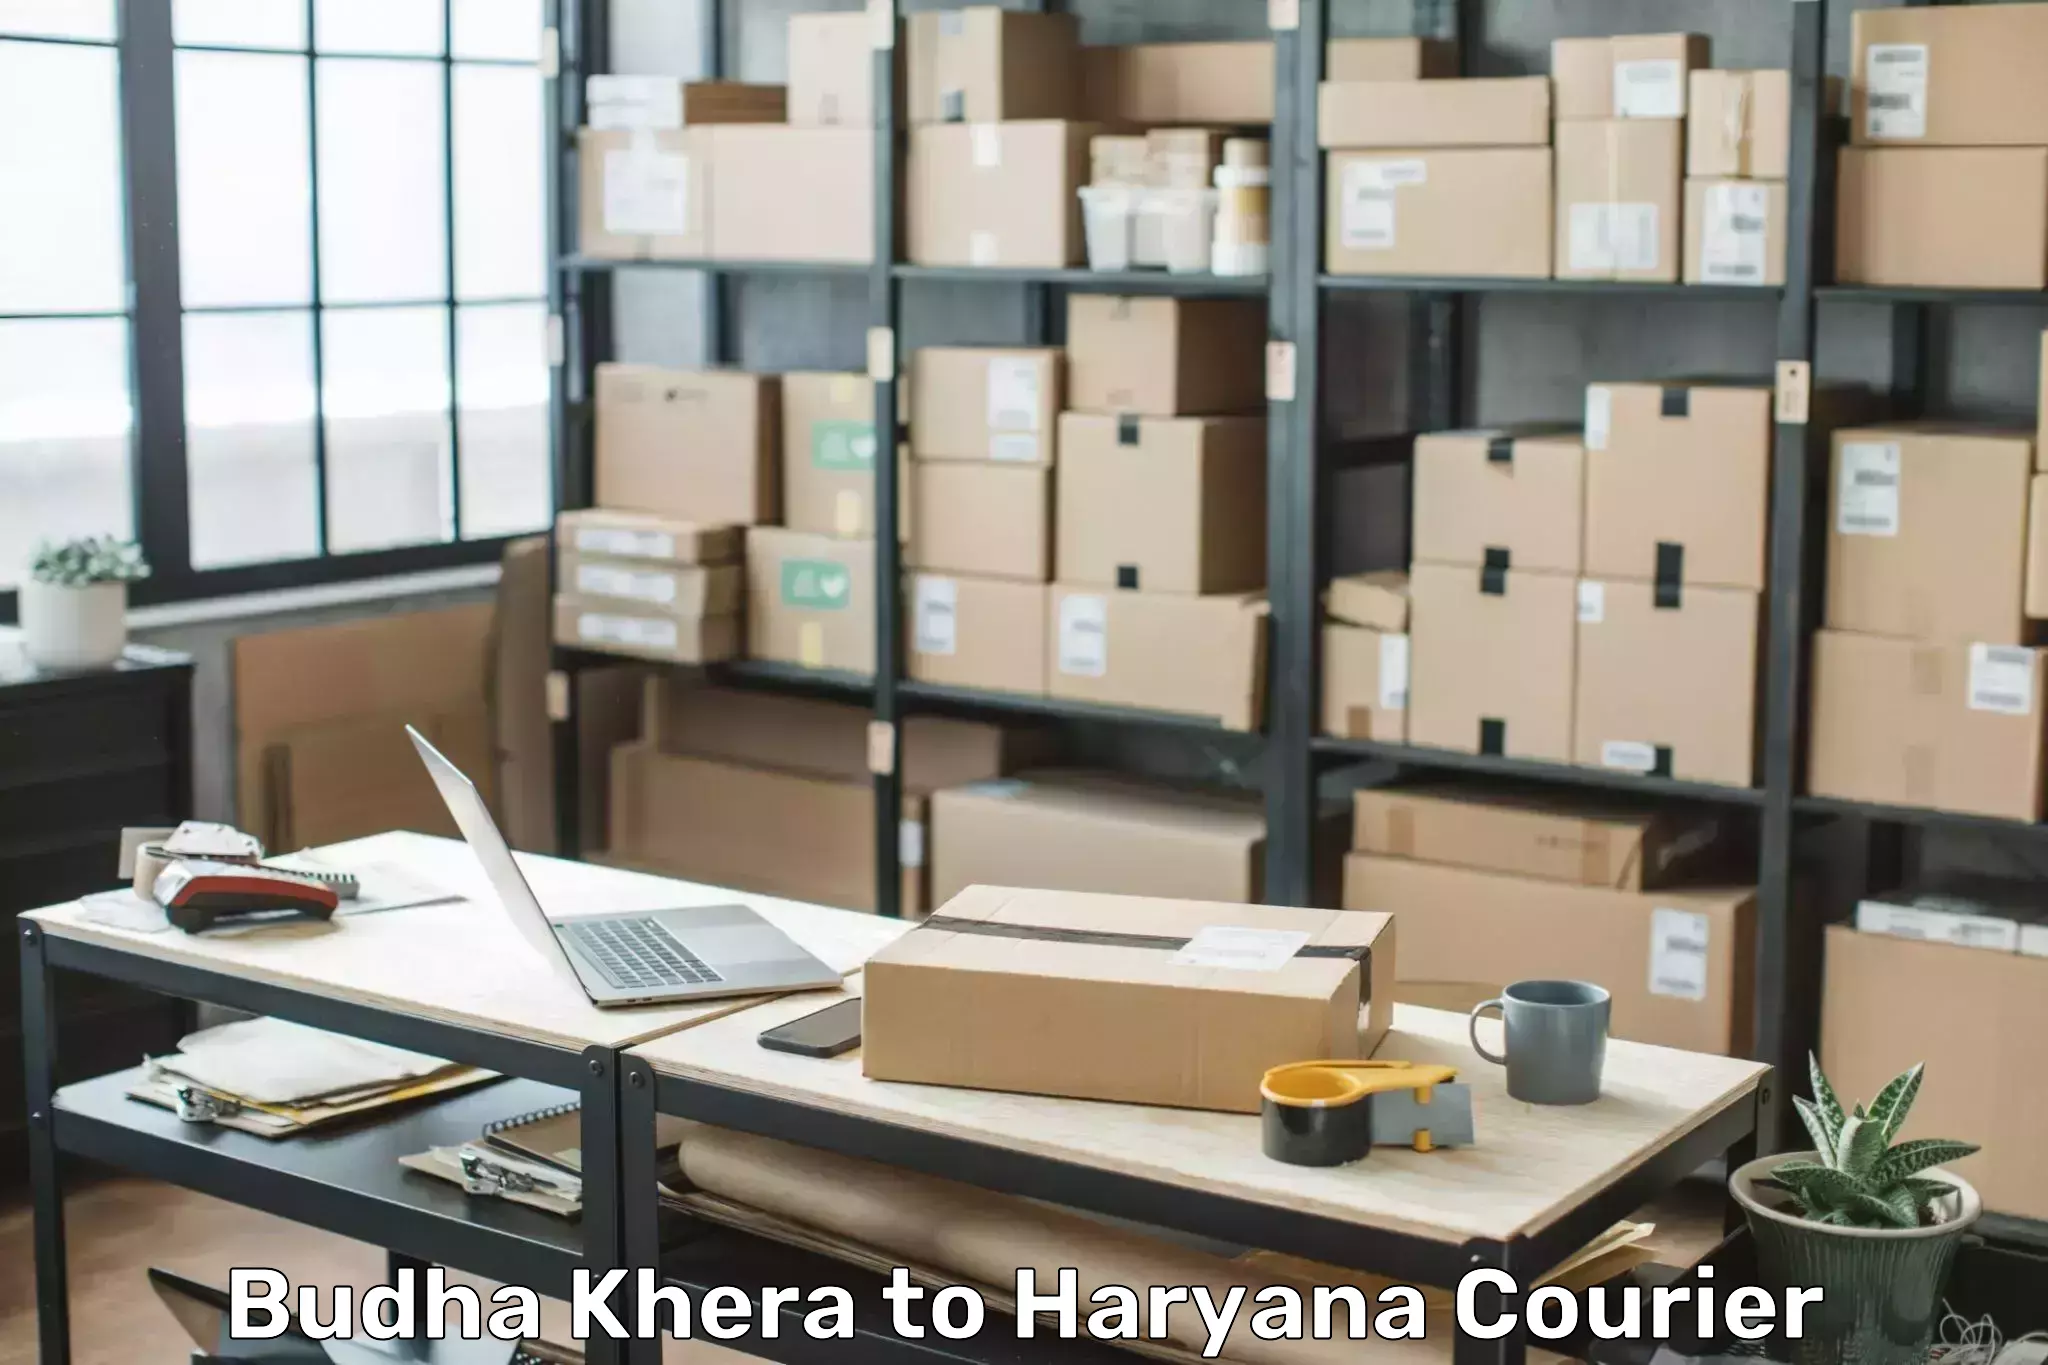 Excess baggage transport Budha Khera to Chaudhary Charan Singh Haryana Agricultural University Hisar